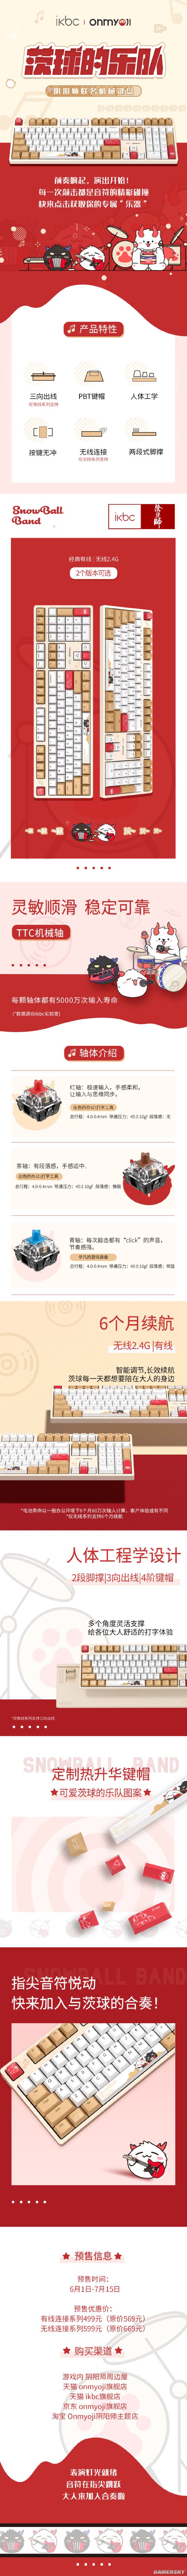 阴阳师×ikbc推联名款键盘 两款可选 售价499元起